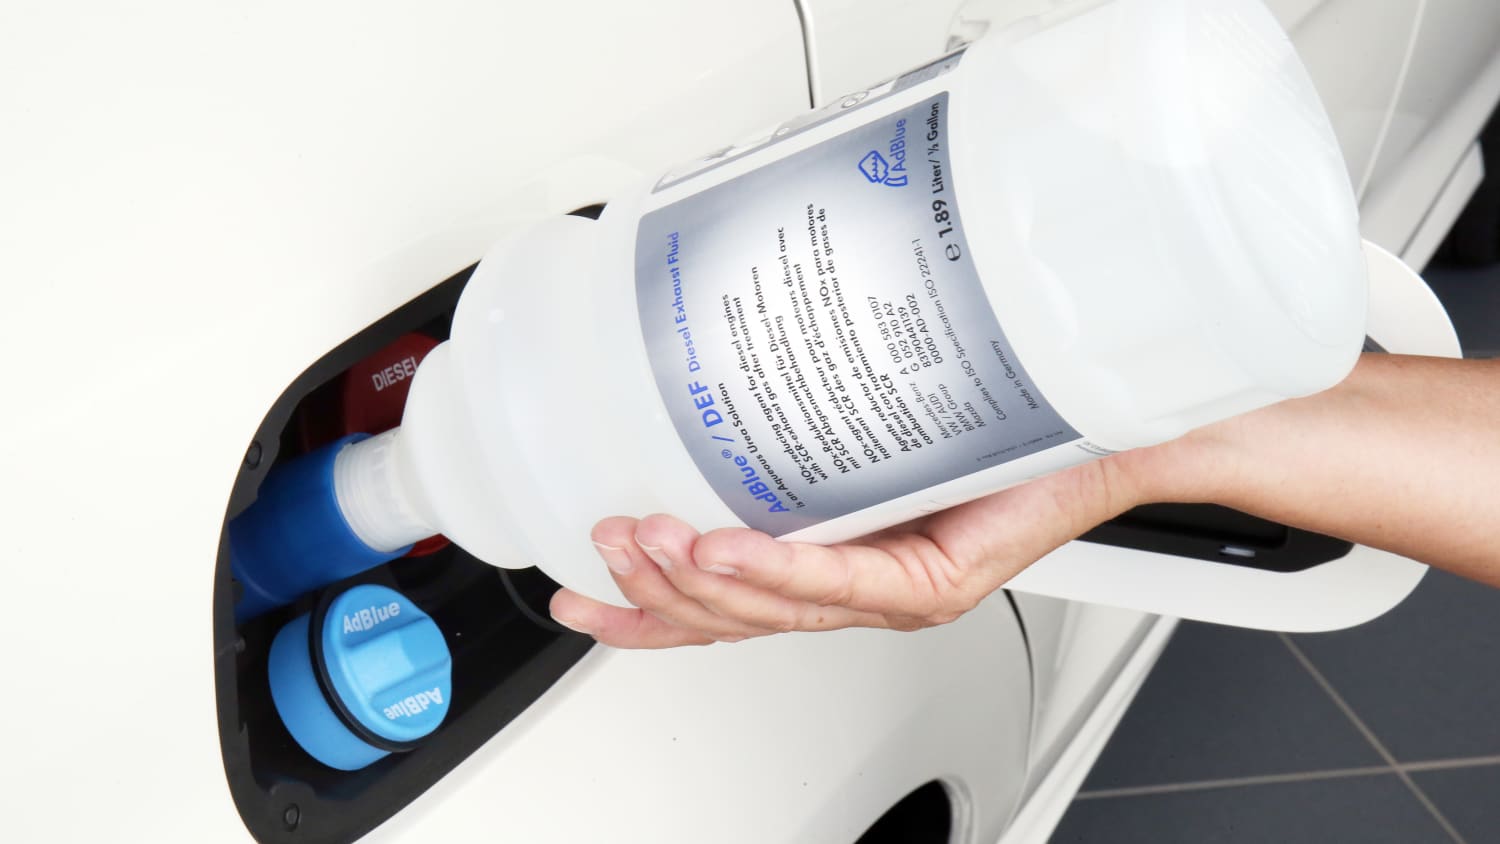 Hyundai AdBlue® Harnstoff 10L Diesel Exhaust Fluid Nachfüllen